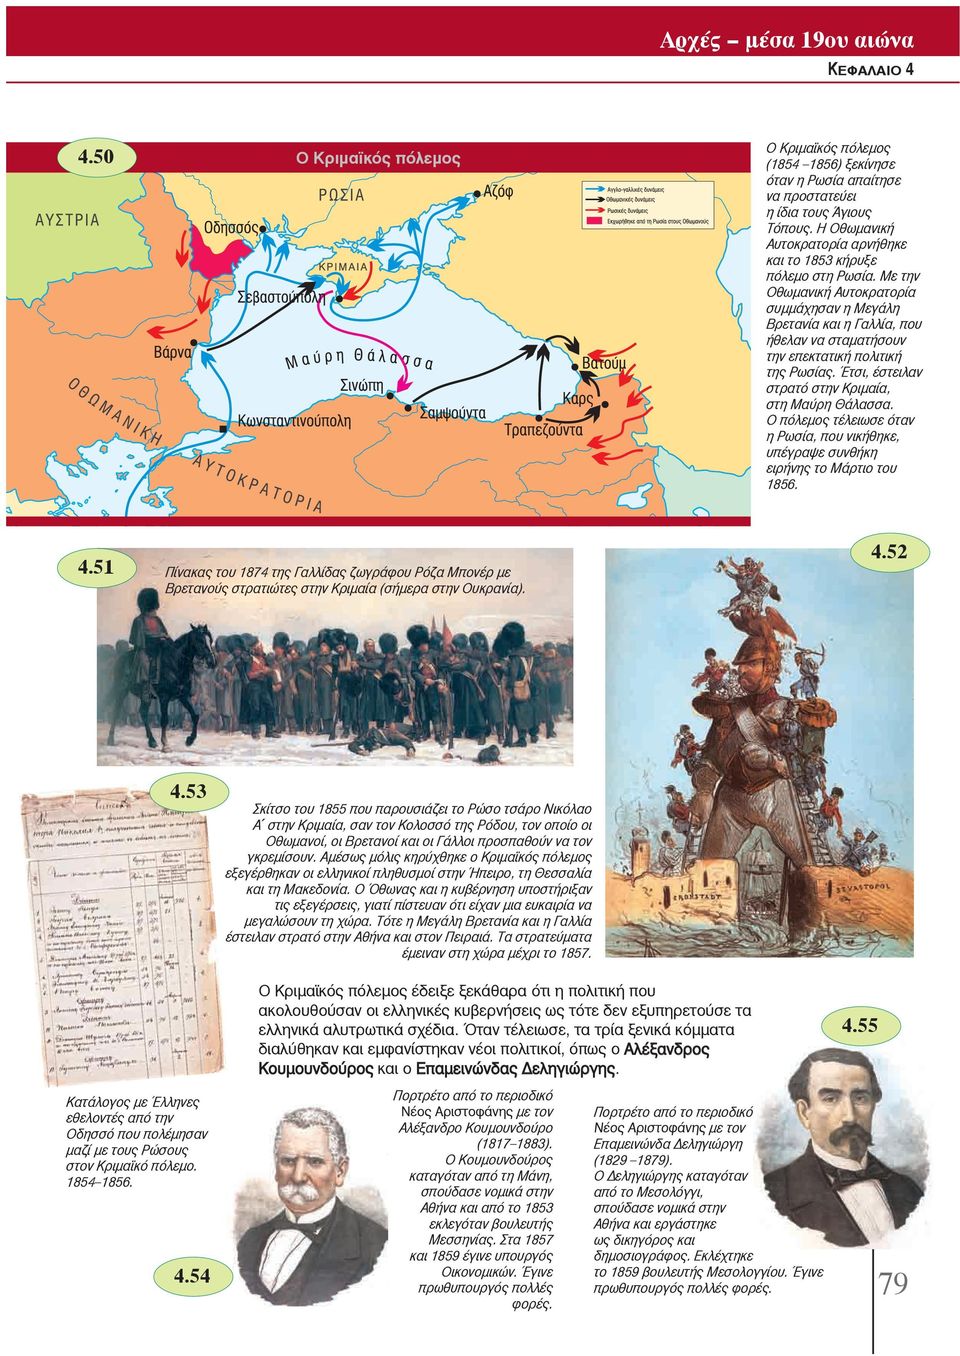 Ο πόλεμος τέλειωσε όταν η Ρωσία, που νικήθηκε, υπέγραψε συνθήκη ειρήνης το Μάρτιο του 1856. Ο Κριμαϊκός πόλεμος 4.